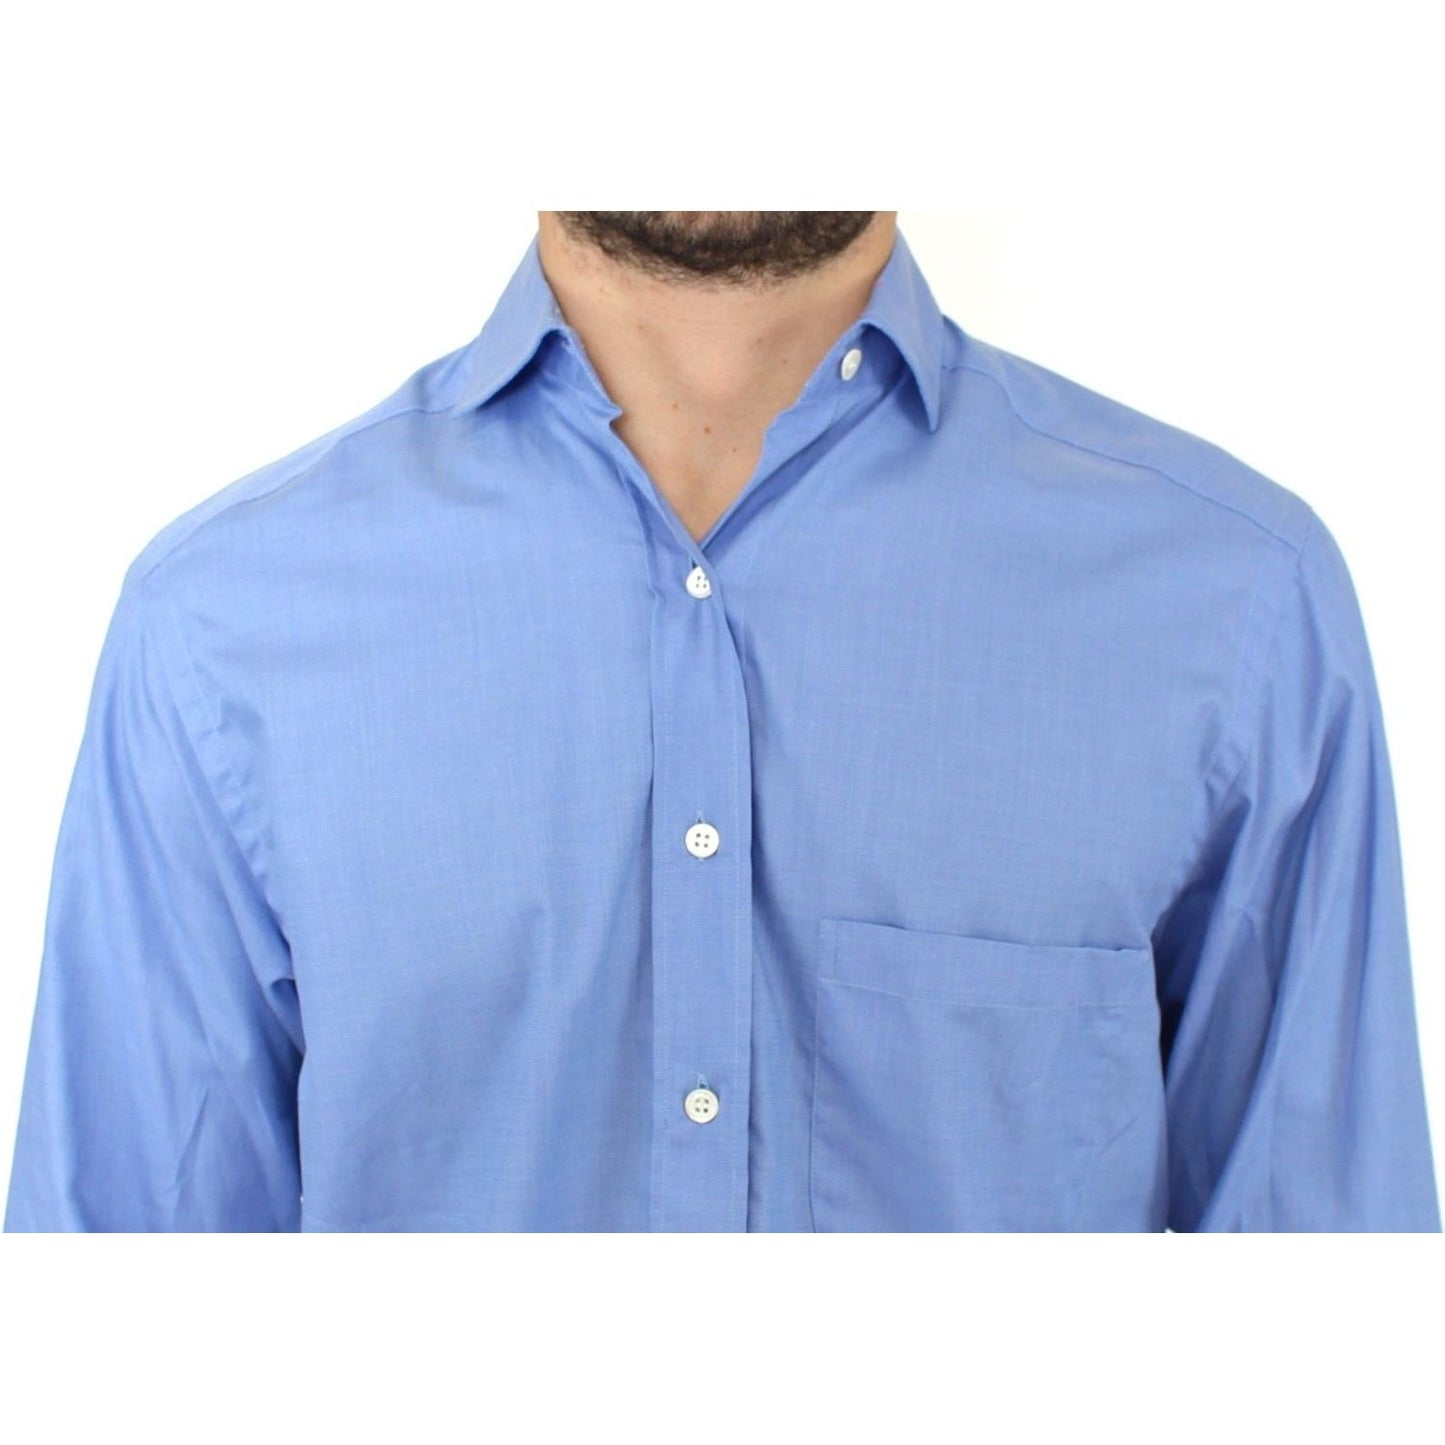 Ermanno Scervino Dapper Blue Cotton Dress Shirt for Men blue-cotton-dress-classic-fit-shirt